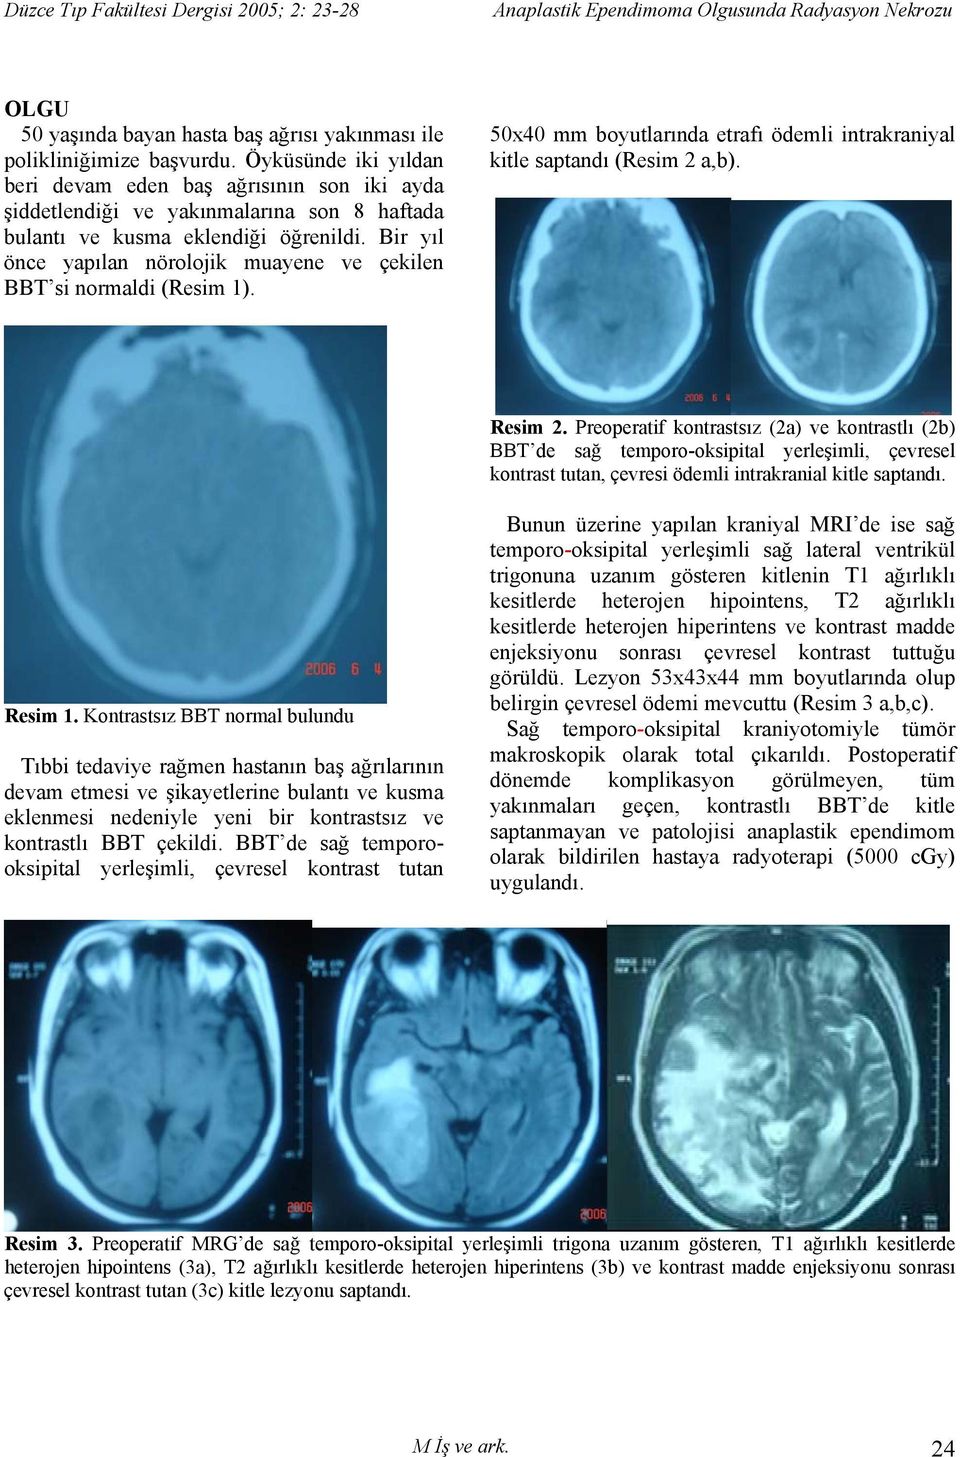 Bir yıl önce yapılan nörolojik muayene ve çekilen BBT si normaldi (Resim 1). 50x40 mm boyutlarında etrafı ödemli intrakraniyal kitle saptandı (Resim 2 a,b). Resim 2.